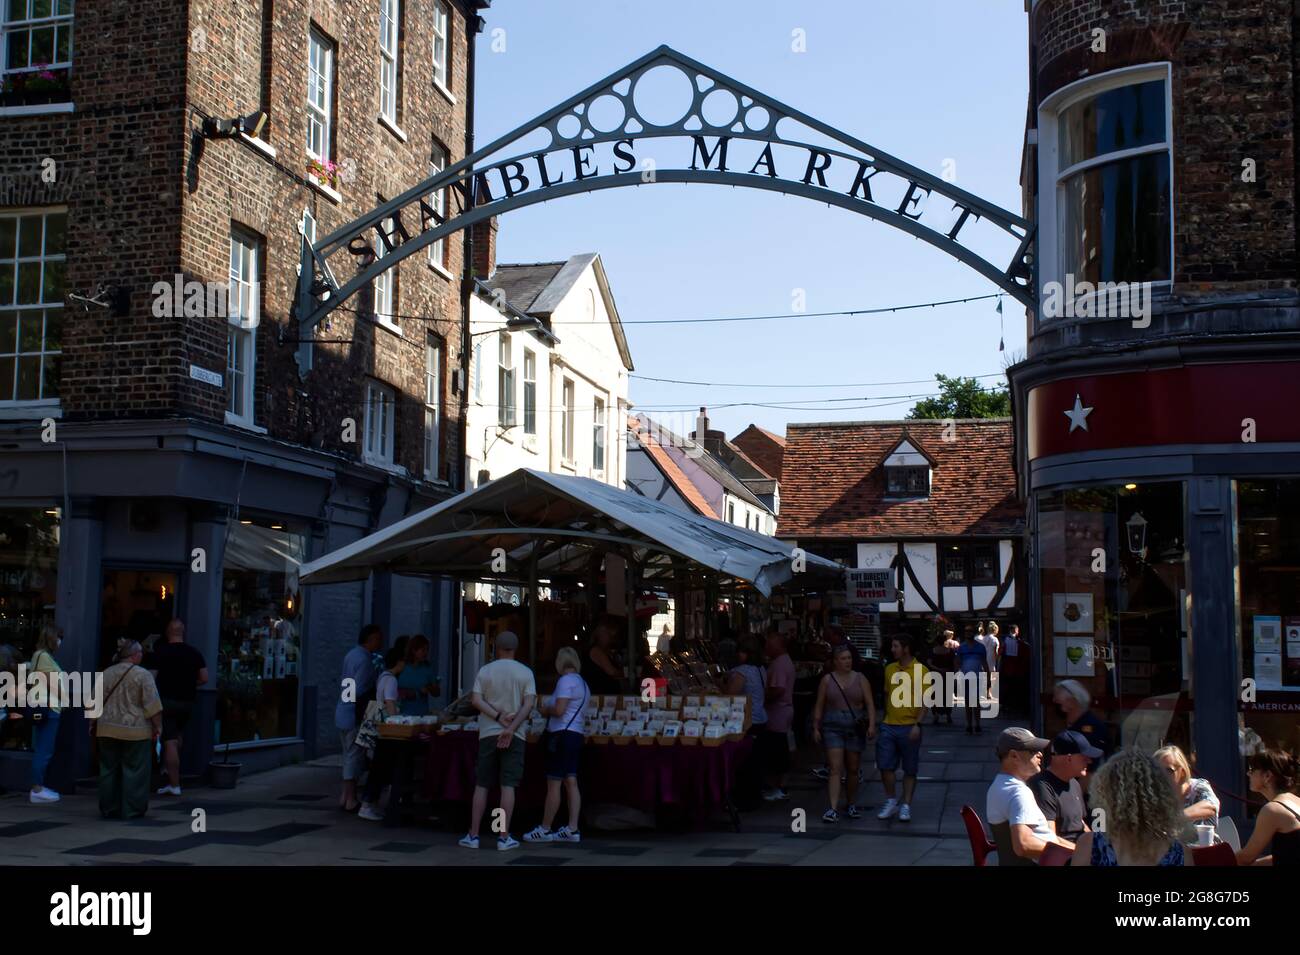 Der Parliament Street Metal Archway Eingang zum Shamlble Market, York. Stockfoto